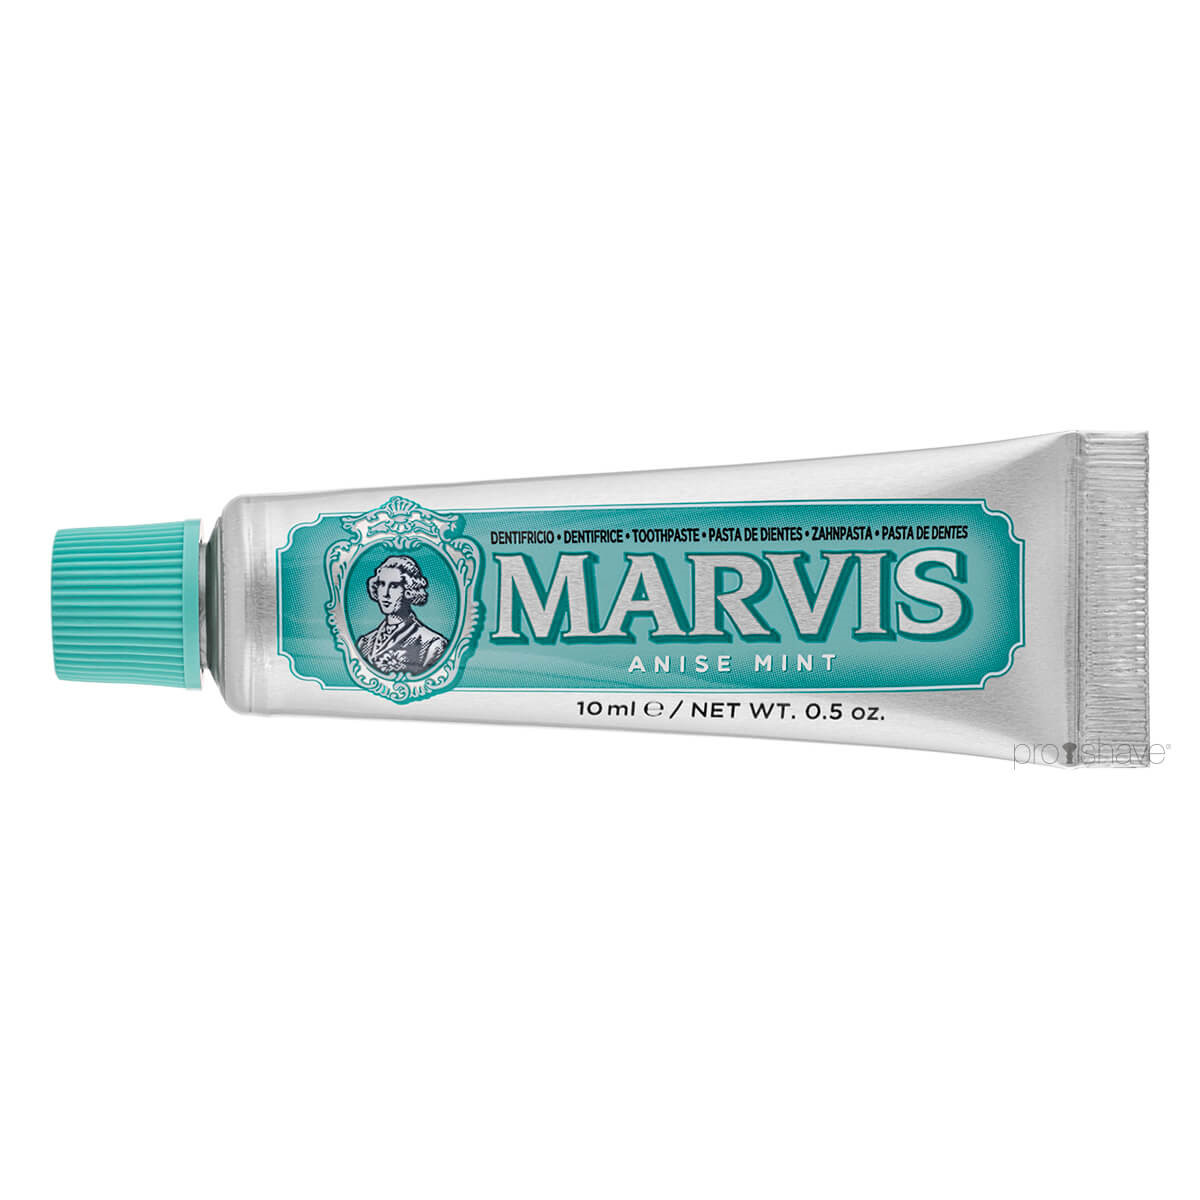 Marvis Anise Mint Tandpasta, Rejsestørrelse, 10 ml.